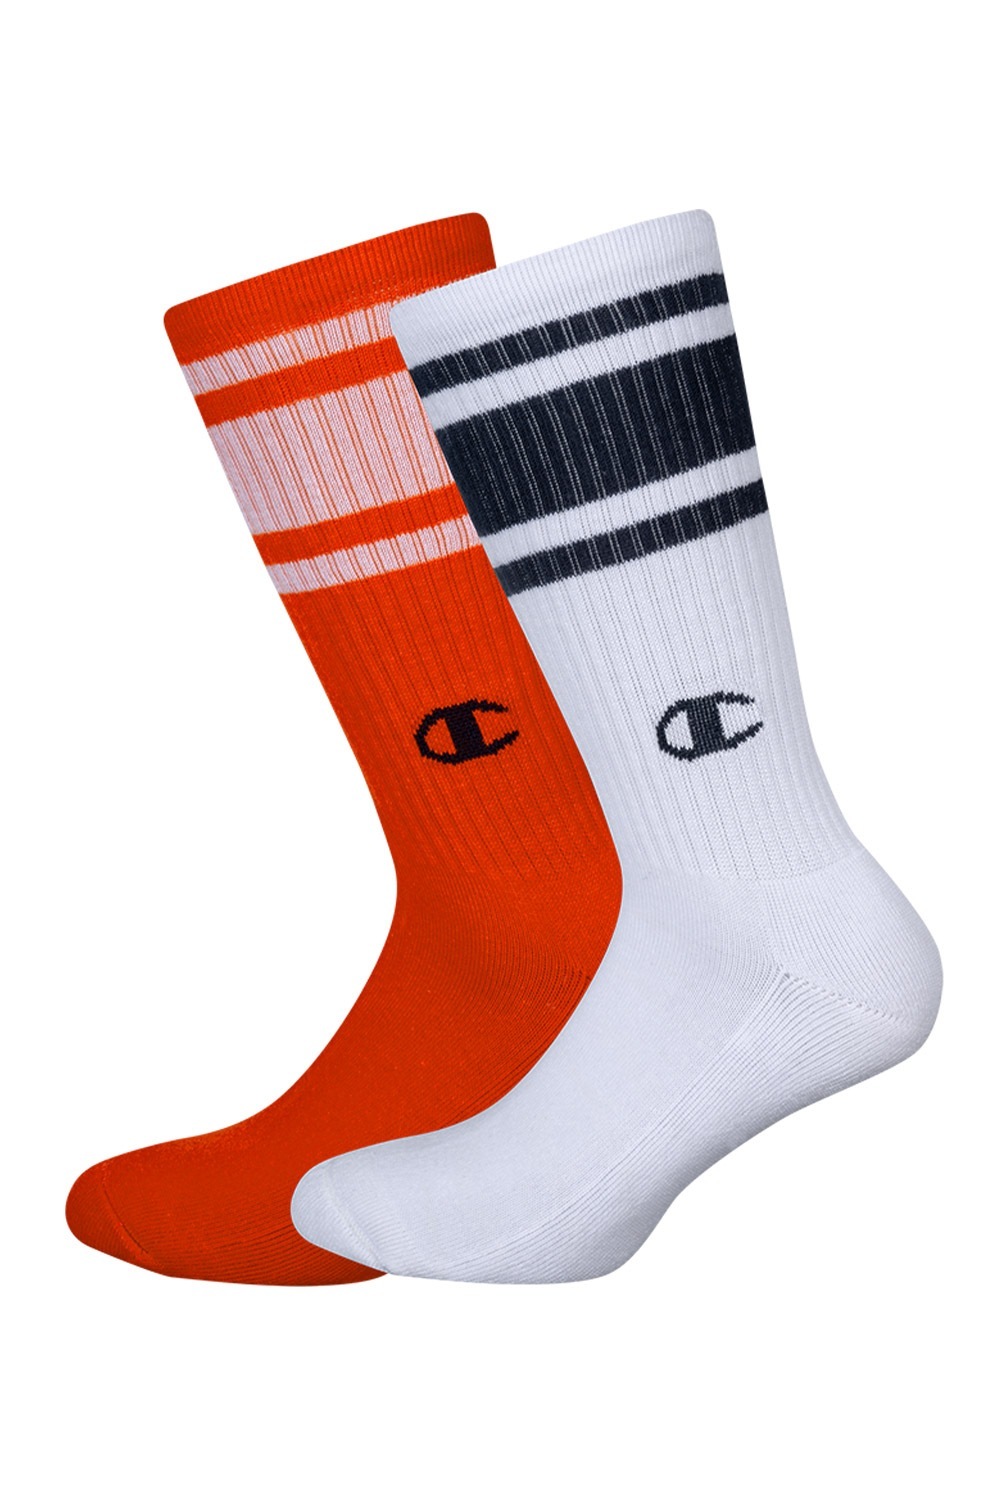 Champion zokni magasabb, 2 pár 1 csomagban, narancs-fehér színben fotója